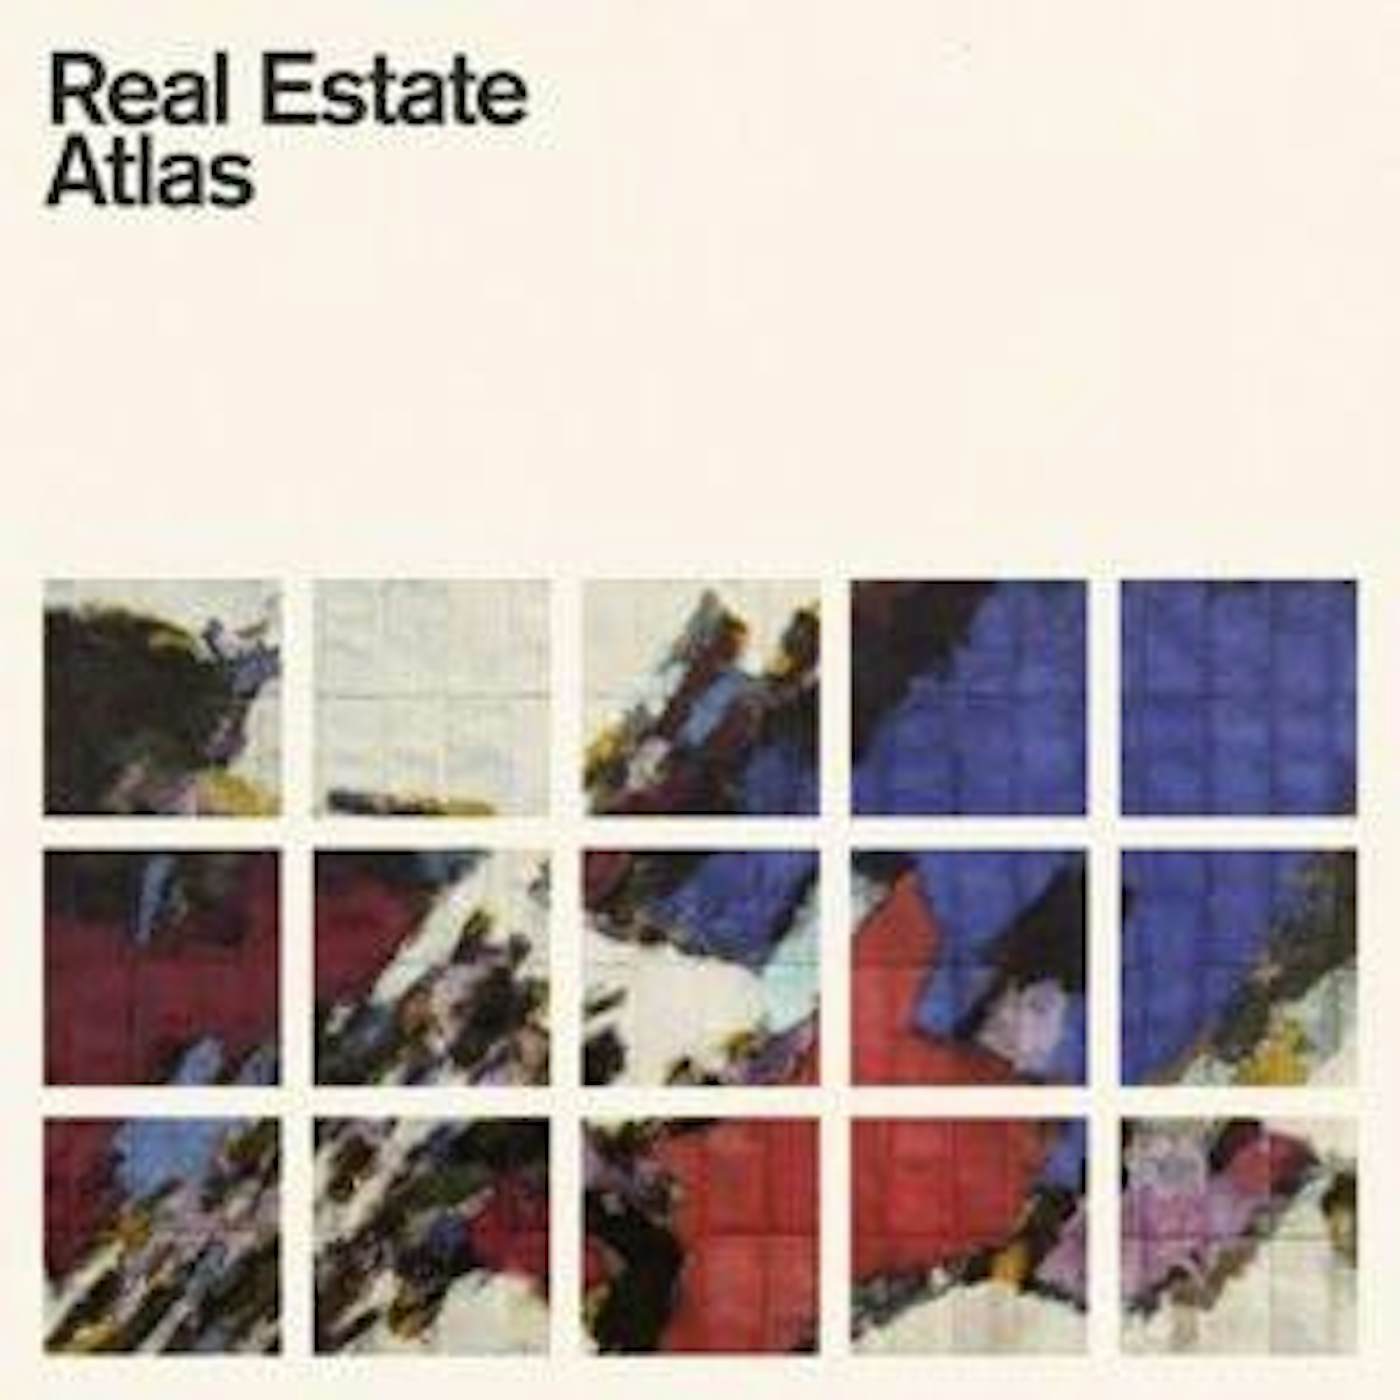 Real Estate ATLAS CD